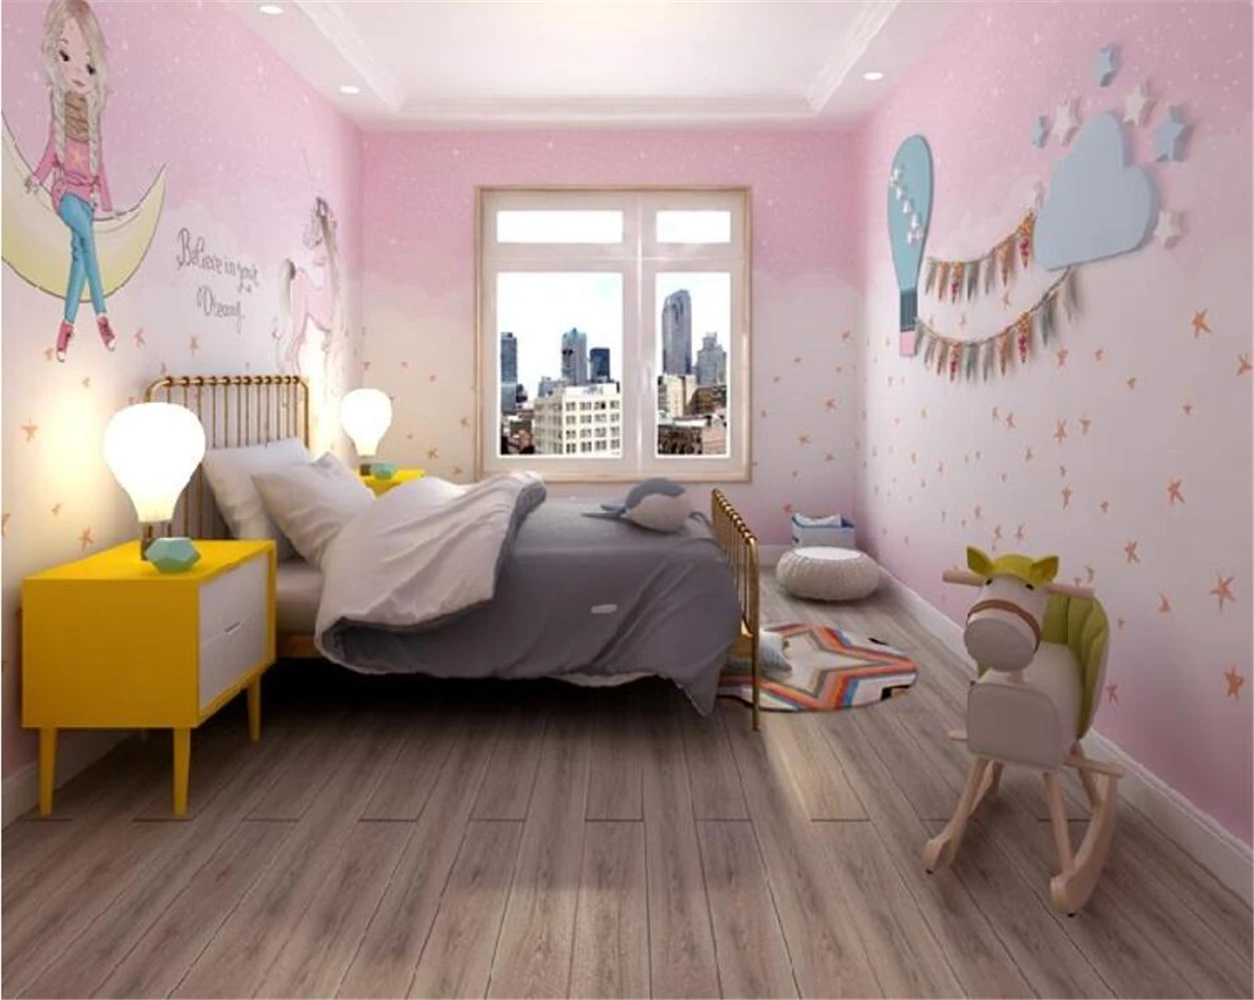 beibehang Скандинавские настенные обои для детского Рая, Настенная ткань для спальни, обои для комнаты девочек, Розовая принцесса с девчачьим сердечком